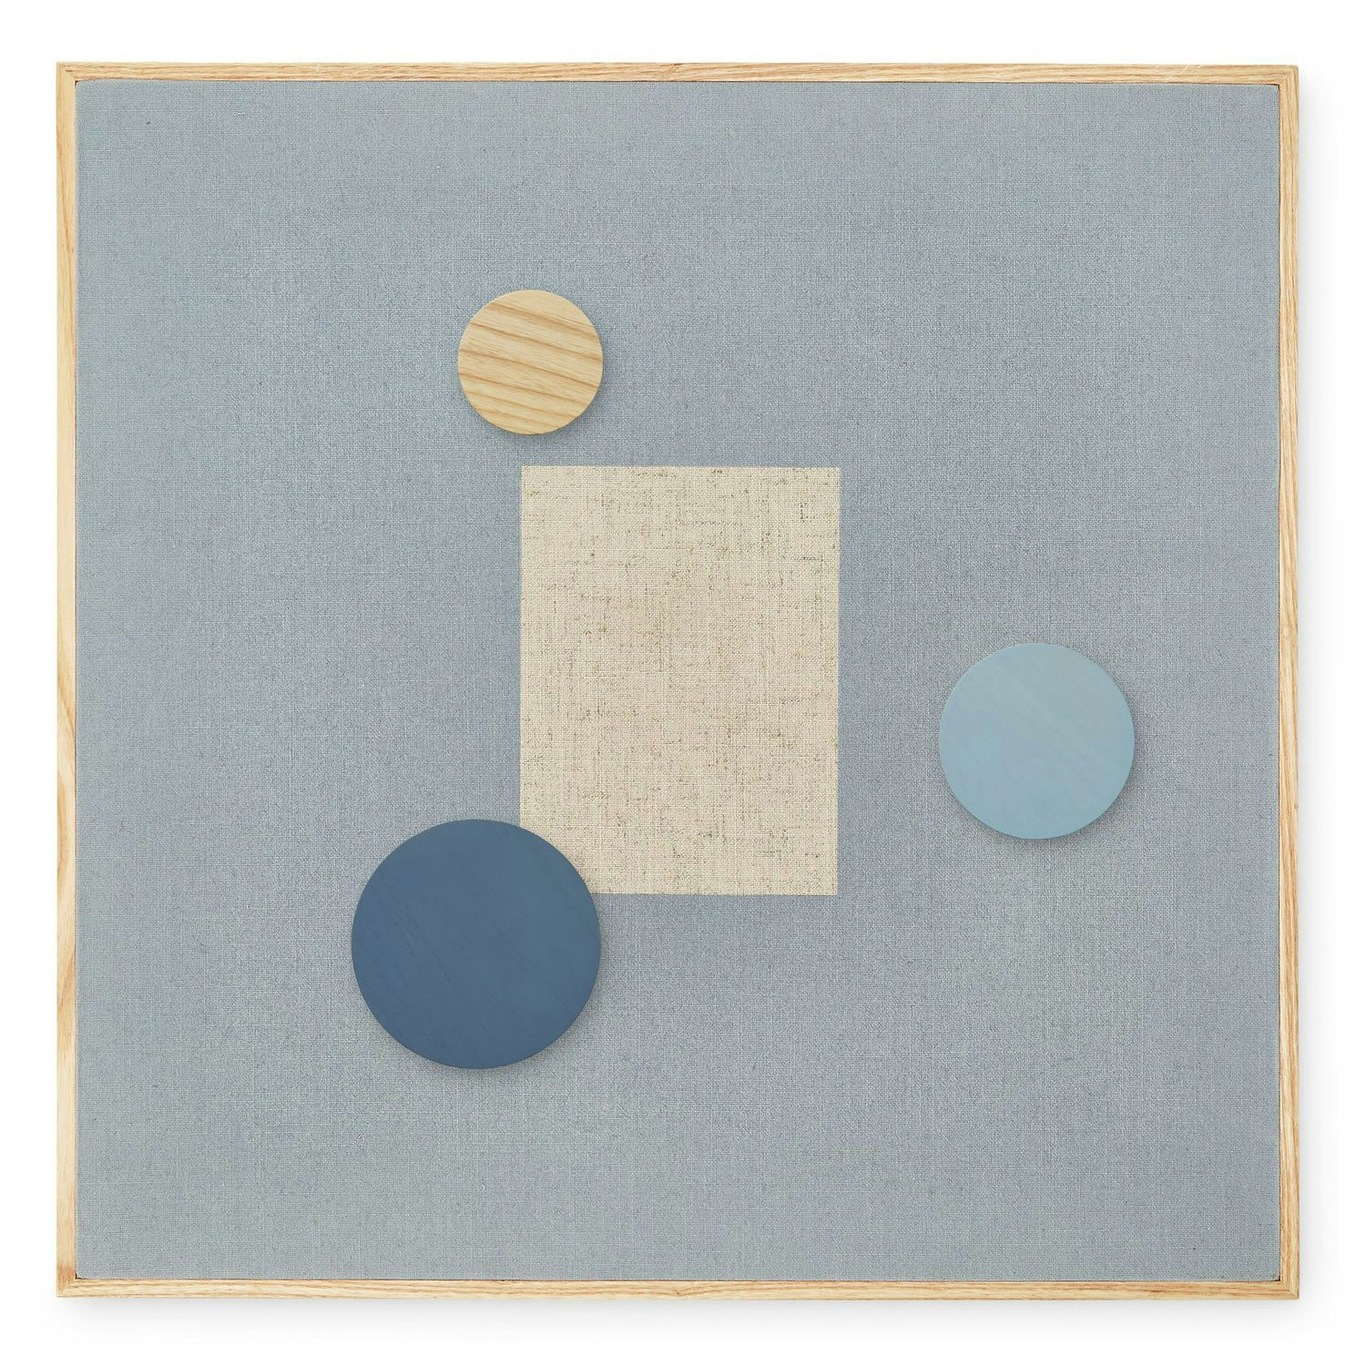 Viestitaulu Magneettinen 51,2x51,2 cm, Sininen